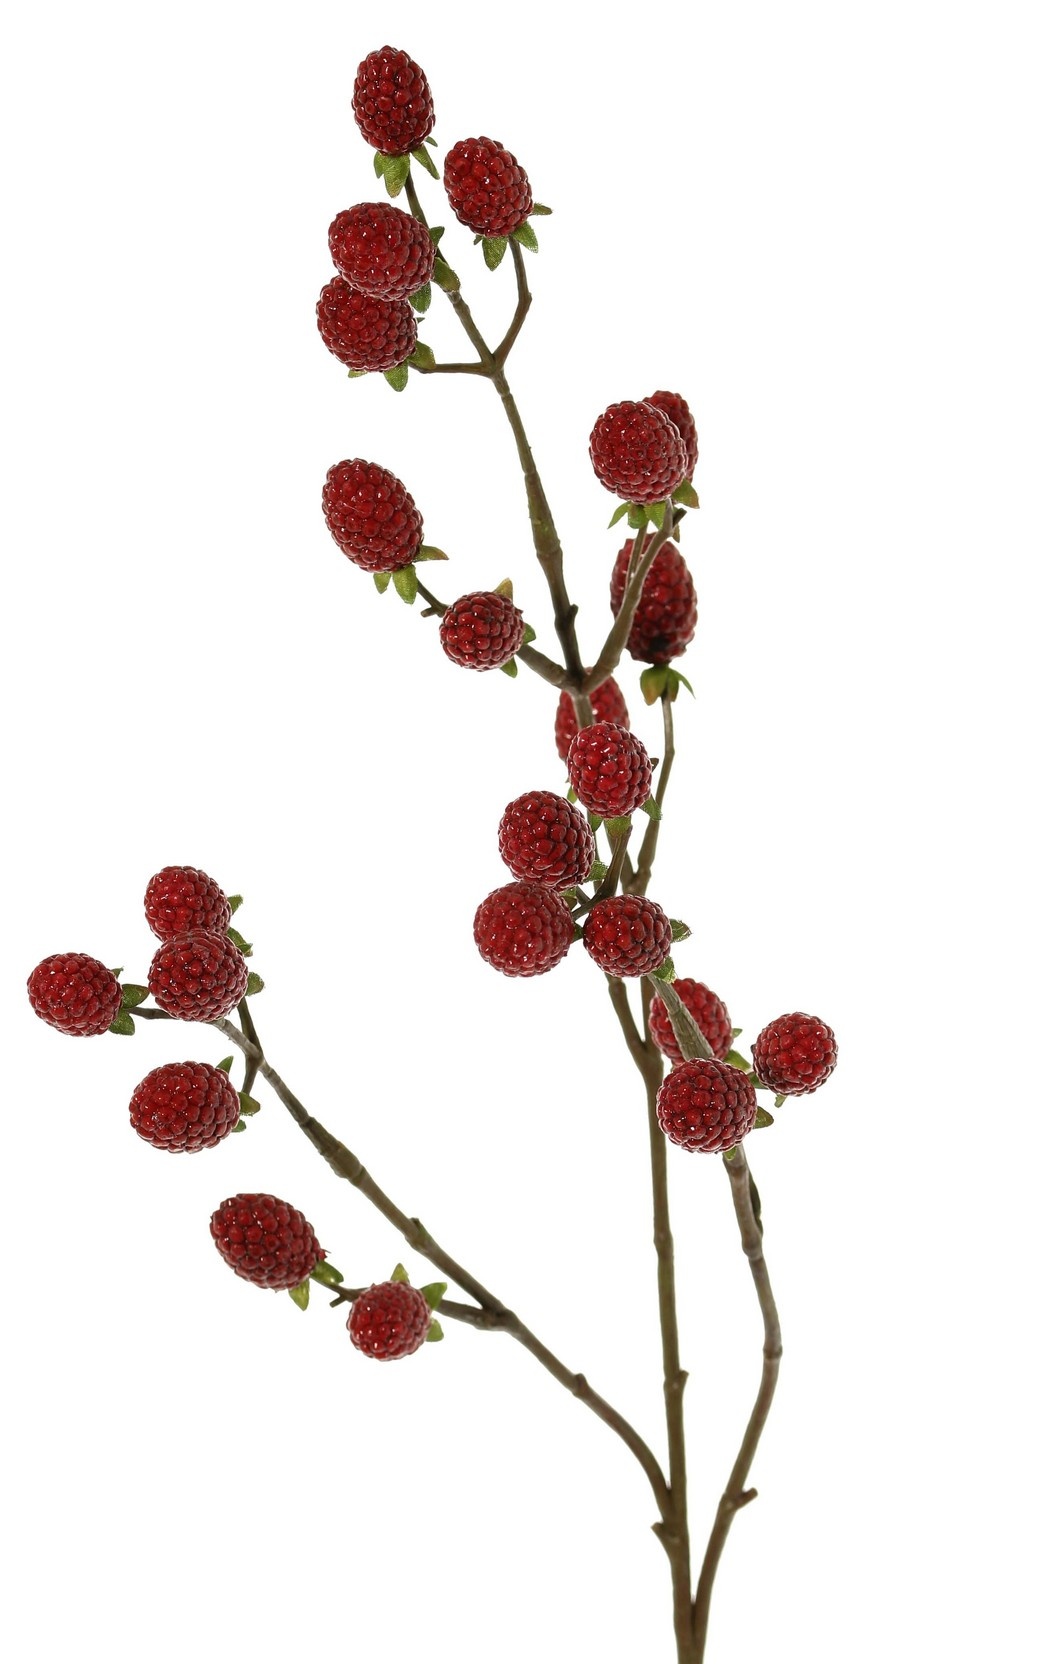 Brombeerzweig (Rubus) 'Fruity Art' mit 23 Brombeeren (11 L/ 12 M), 89 cm